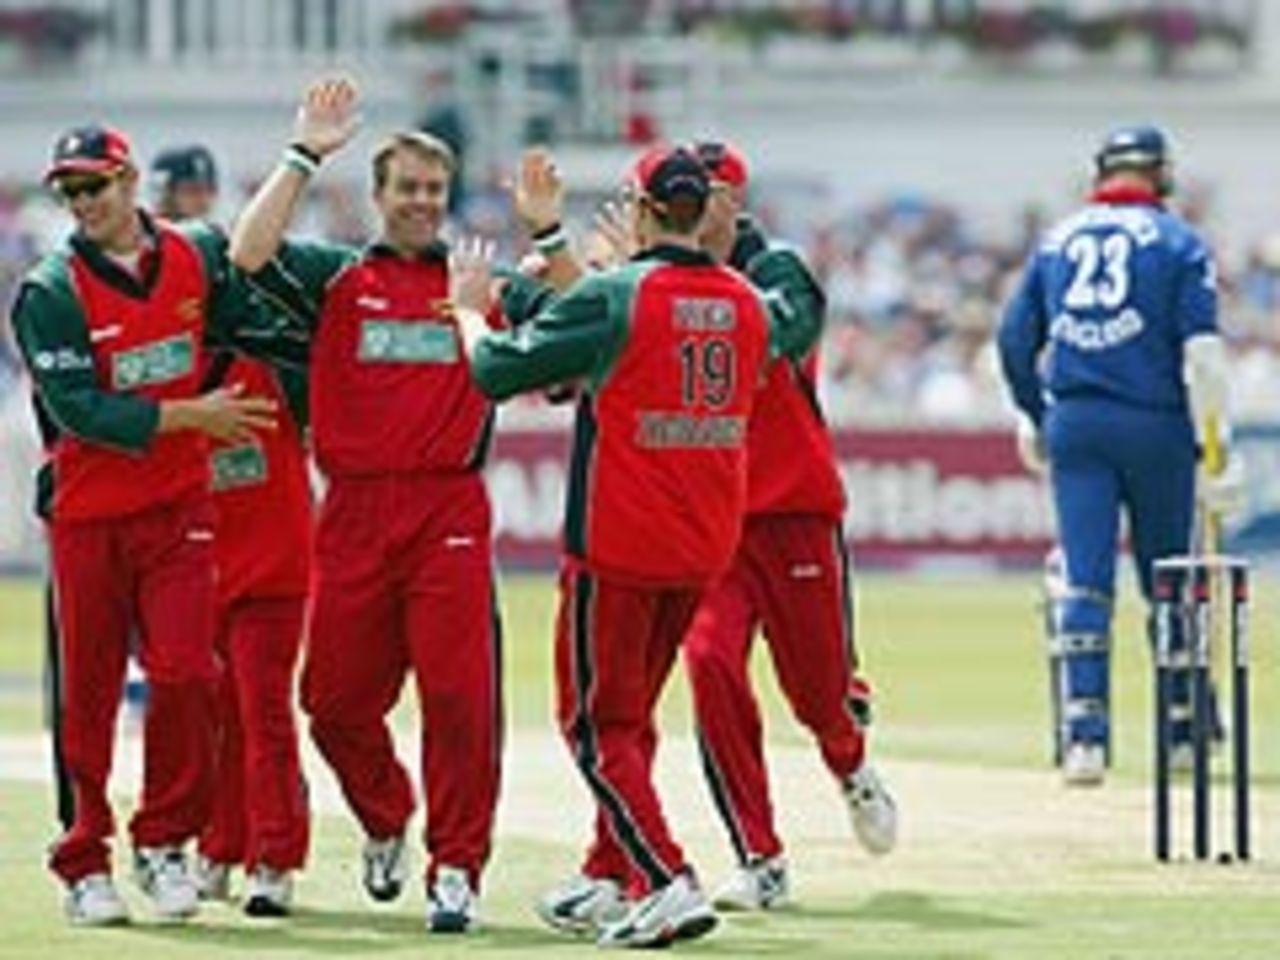 Heath Streak dismisses Marcus Trescothick, England v Zimbabwe, June 26, 2003